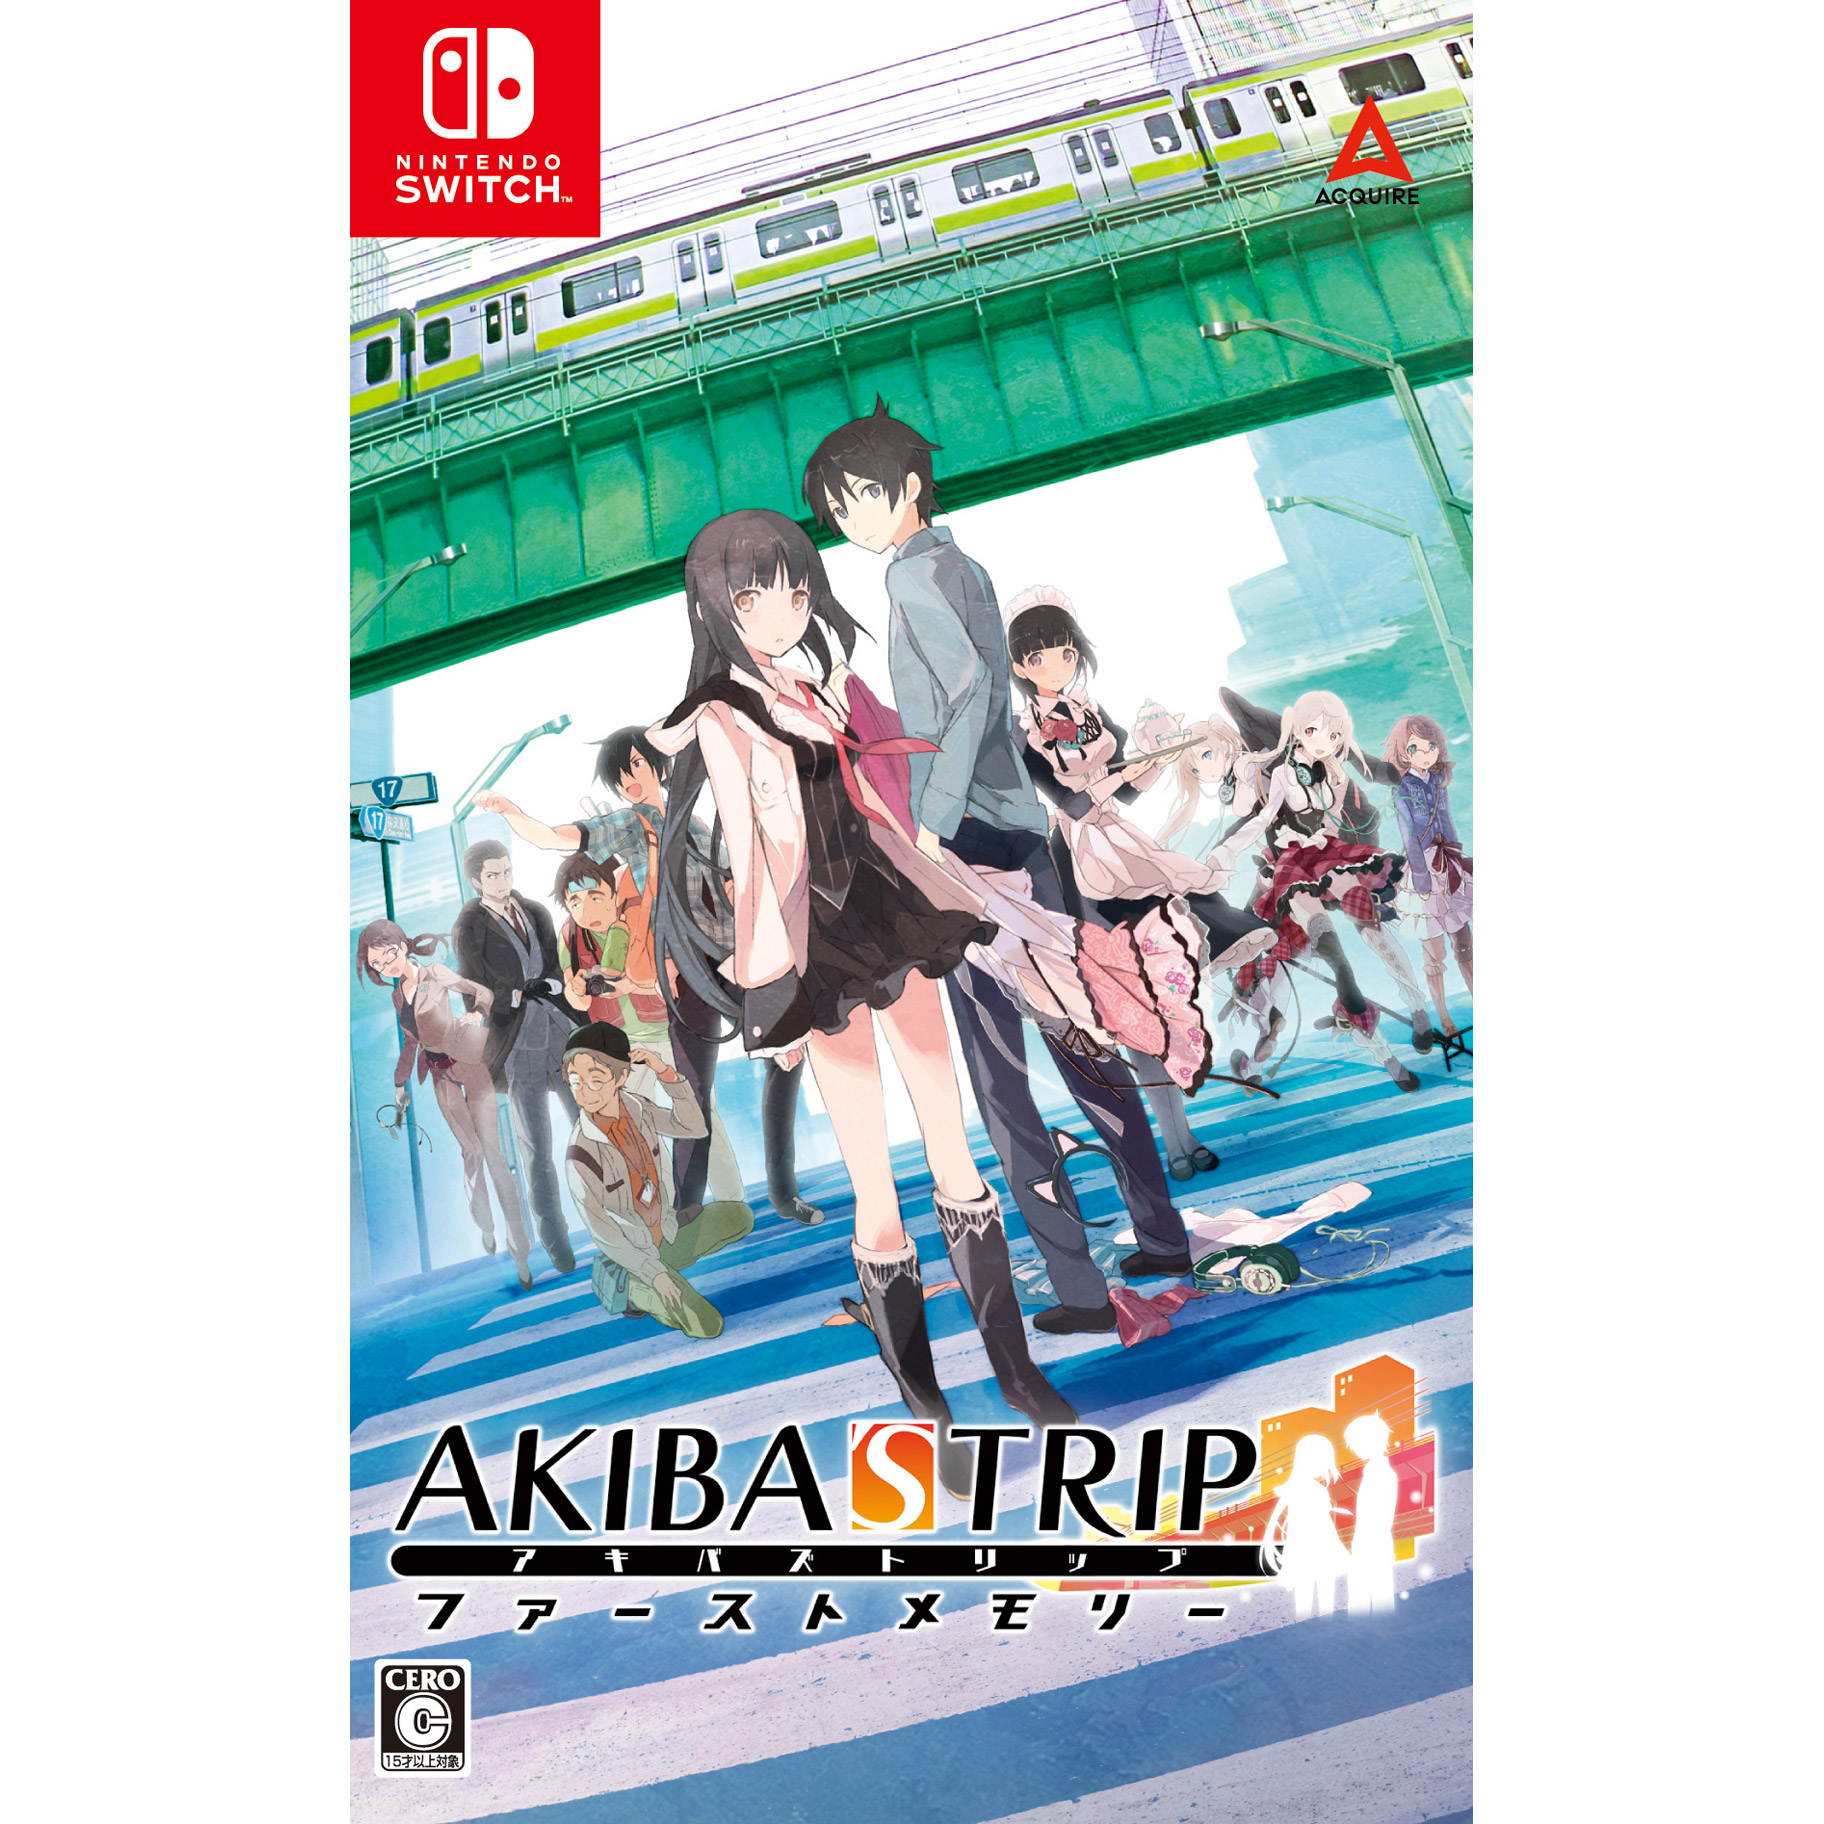 AKIBA’S TRIP ファーストメモリー 通常版 【Switchゲームソフト】